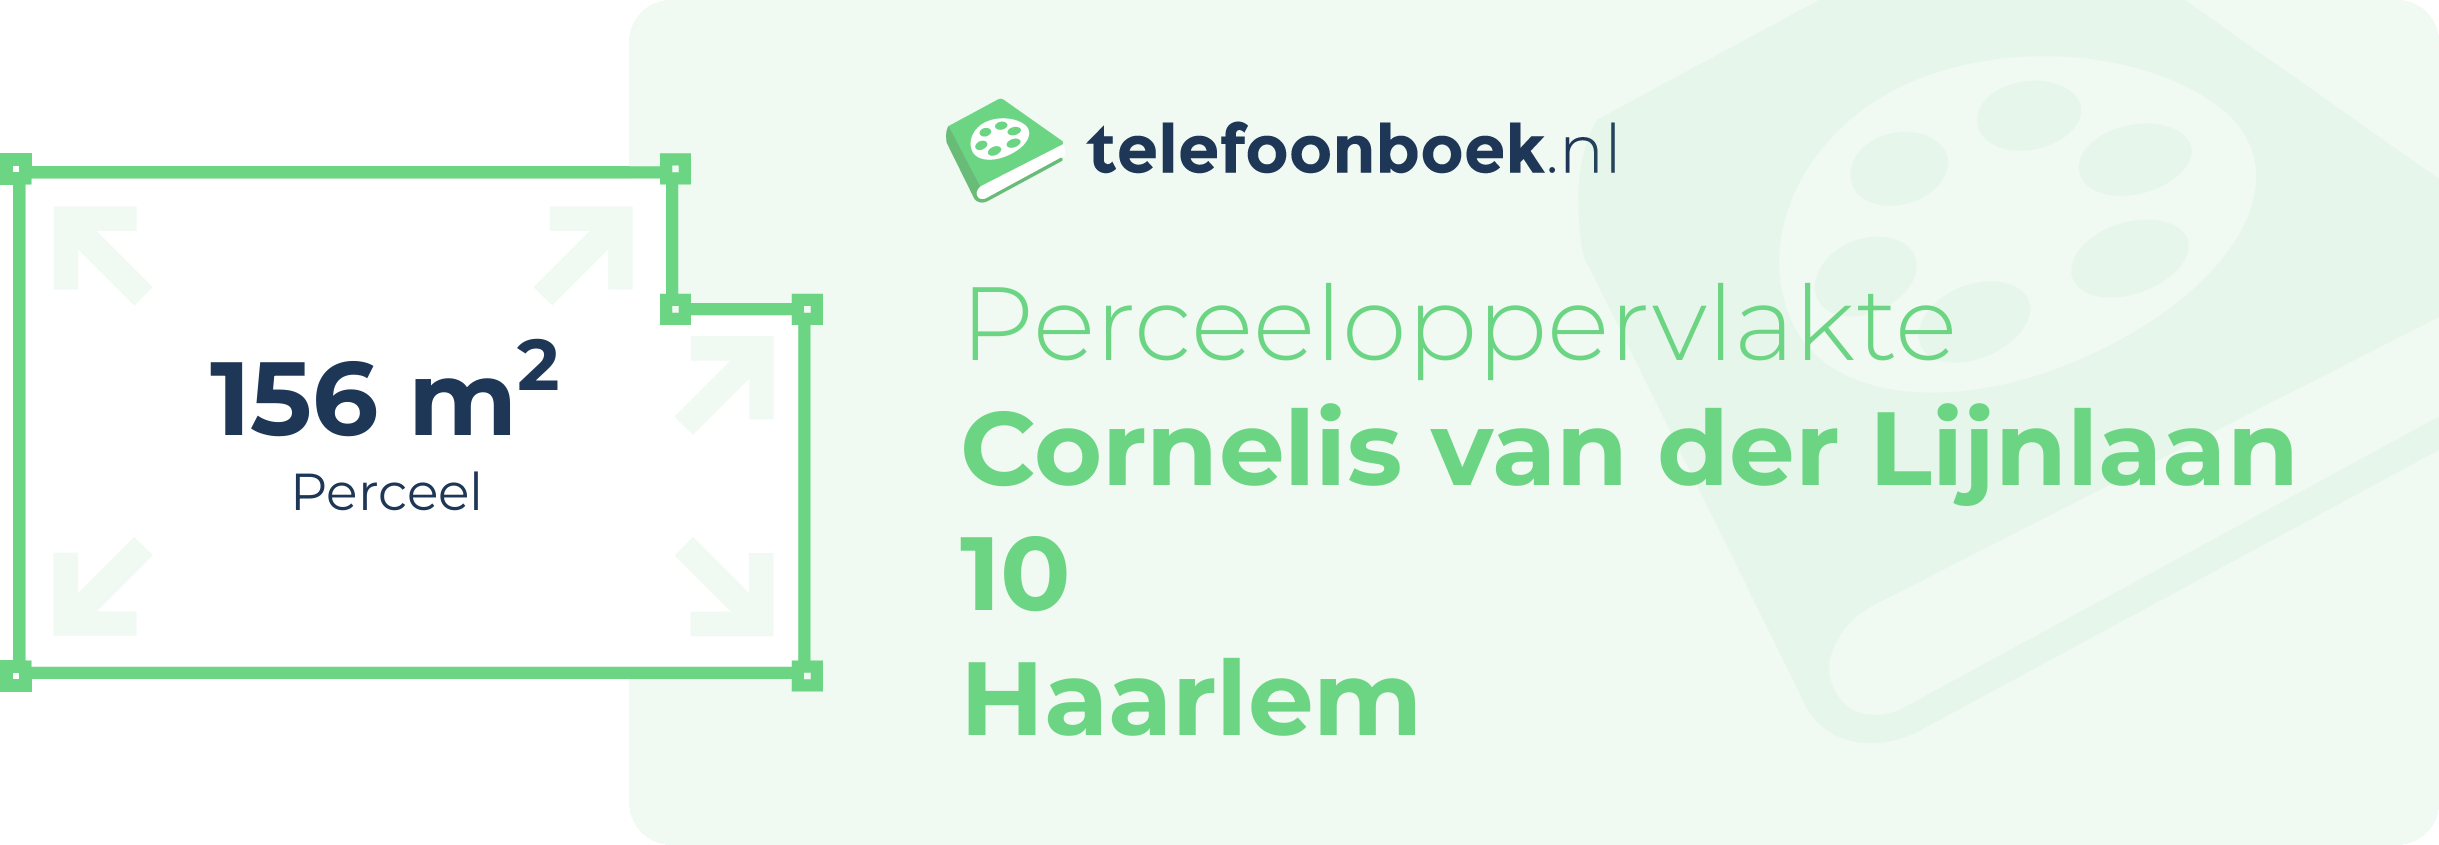 Perceeloppervlakte Cornelis Van Der Lijnlaan 10 Haarlem